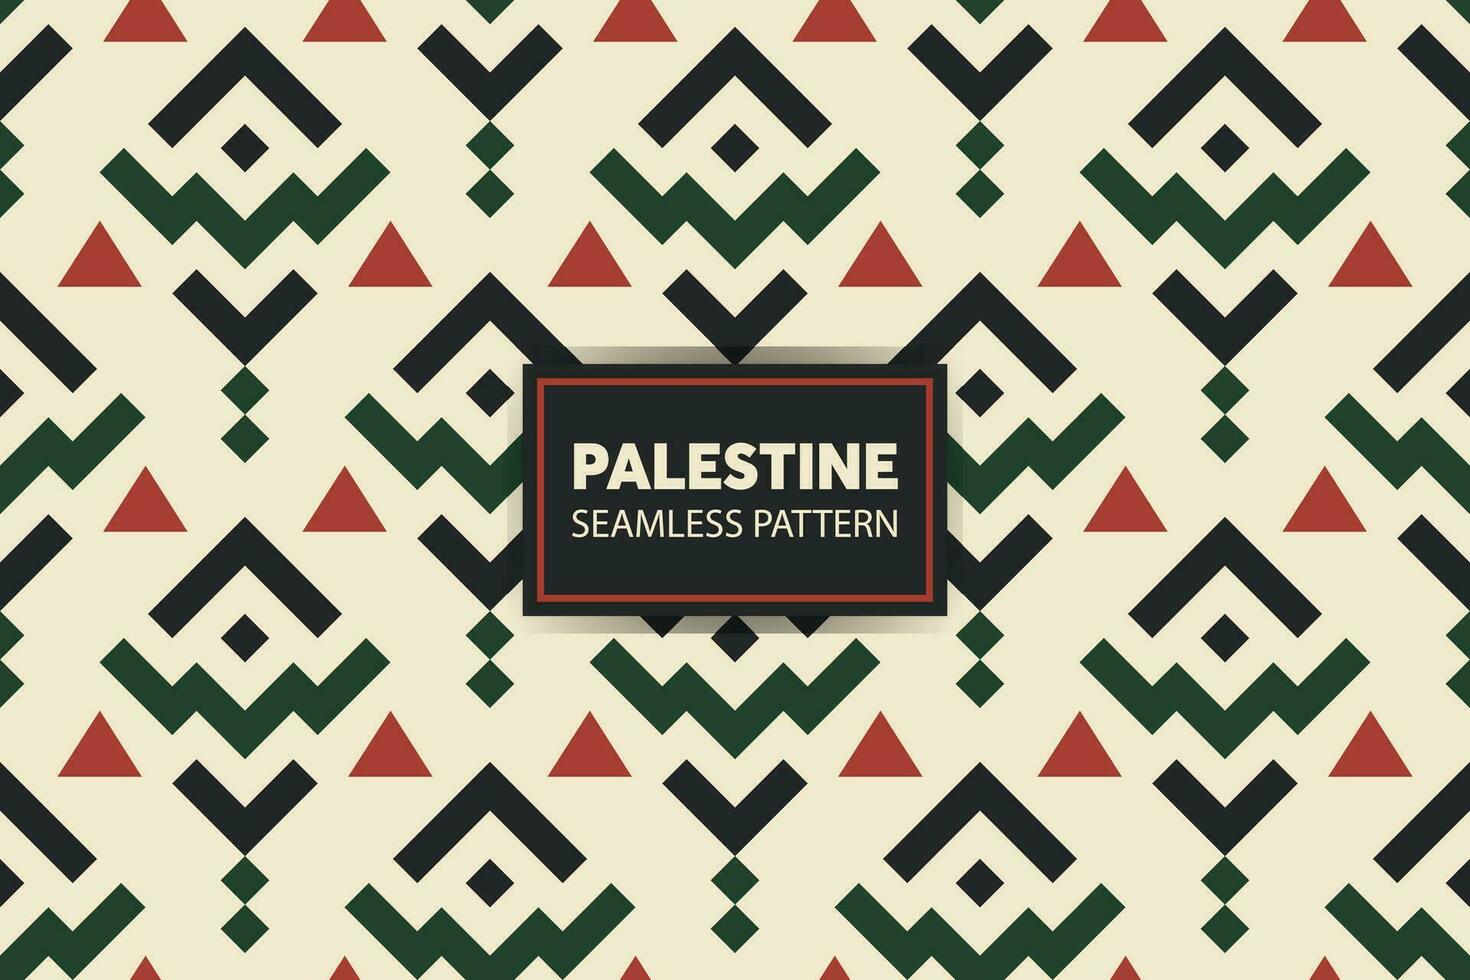 palästinensisch Stickerei Muster Hintergrund. großartig zum Präsentationen und Folien. Vektor Datei.